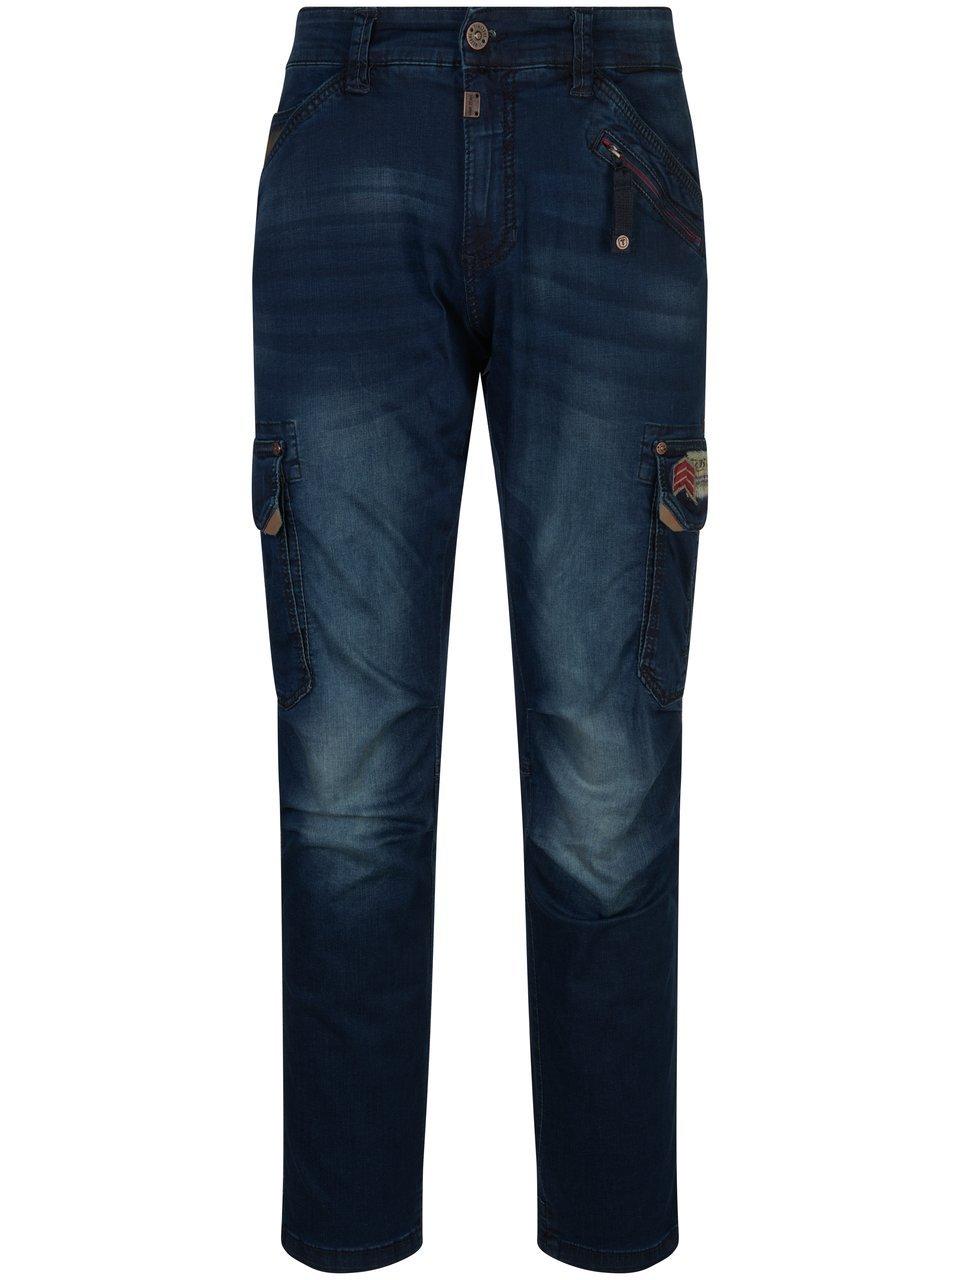 Jeans in inchlengte 32 Van Timezone denim